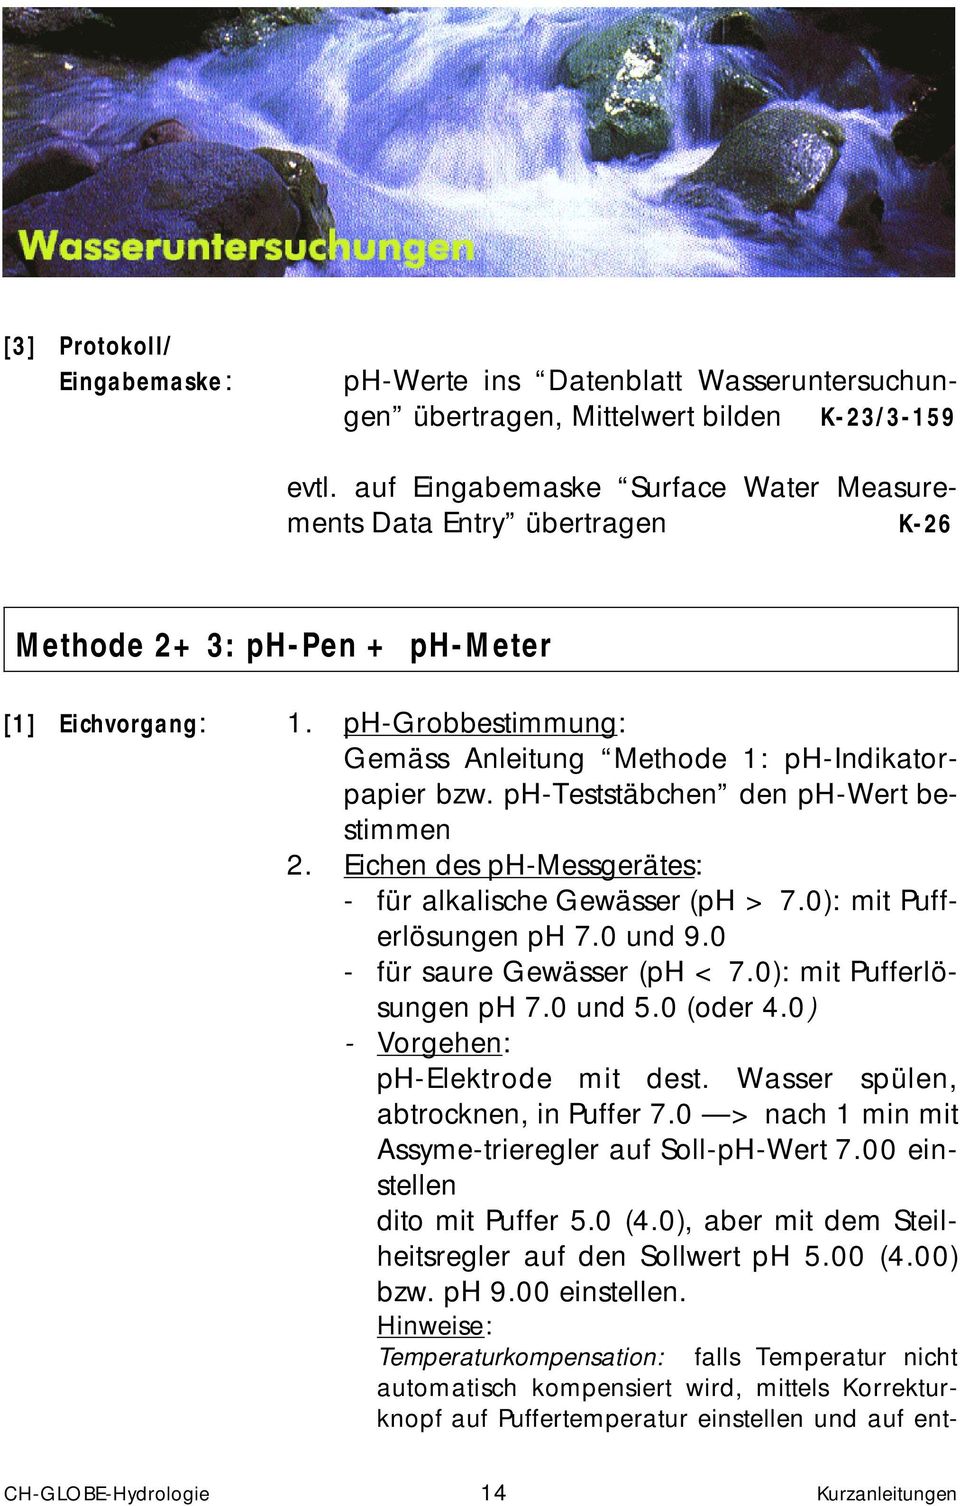 ph-teststäbchen den ph-wert bestimmen 2. Eichen des ph-messgerätes: - für alkalische Gewässer (ph > 7.0): mit Pufferlösungen ph 7.0 und 9.0 - für saure Gewässer (ph < 7.0): mit Pufferlösungen ph 7.0 und 5.